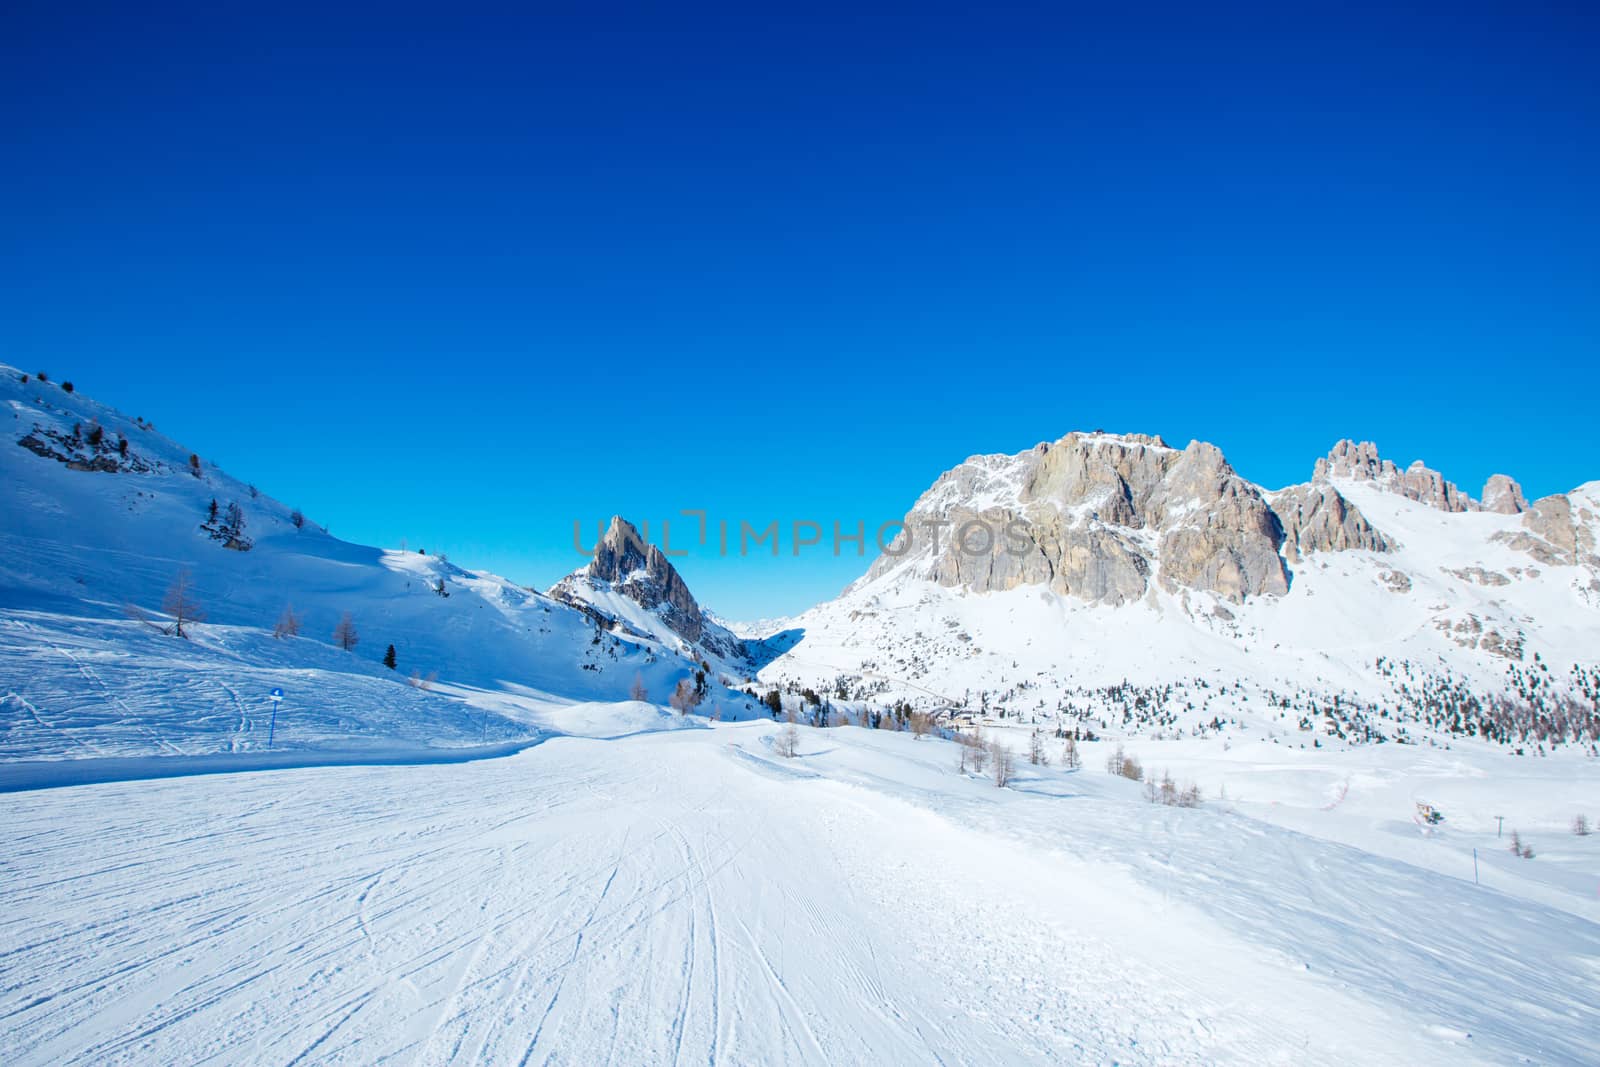 Dolomites winter mountains ski resort by destillat